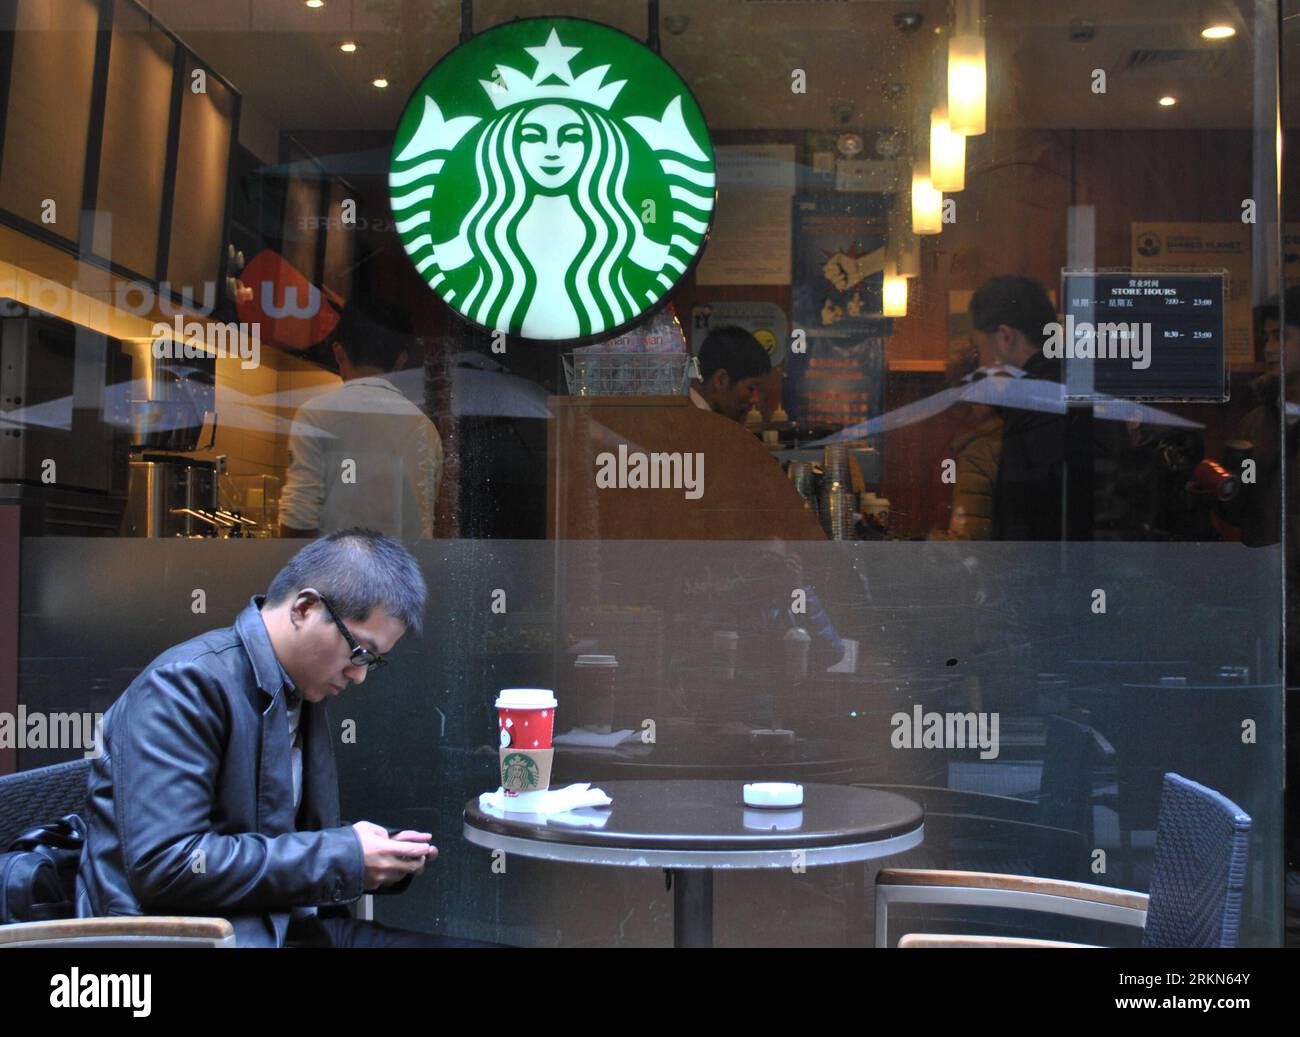 Bildnummer: 56994202 Datum: 31.01.2012 Copyright: imago/Xinhua (120131) -- SHANGHAI, 31. Januar 2012 (Xinhua) -- A man takes a rest at a Starbucks Outlet in Shanghai, East China, 31. Januar 2012. Die in Seattle ansässige Kaffeekette Starbucks Corp. Hat am Dienstag die Preise in ihren 500 chinesischen Festlandläden erhöht, die erste Preiserhöhung für ihre Festlandläden seit fünf Jahren. (Xinhua/Lin Chao) (ljh) CHINA-STARBUCKS-PRICE-RISE (CN) PUBLICATIONxNOTxINxCHN Wirtschaft Gastronomie xbs x0x 2012 quer 56994202 Datum 31 01 2012 Copyright Imago XINHUA Shanghai Jan 31 2012 XINHUA ein Mann erholt sich IN einem Starbucks Outlet Stockfoto